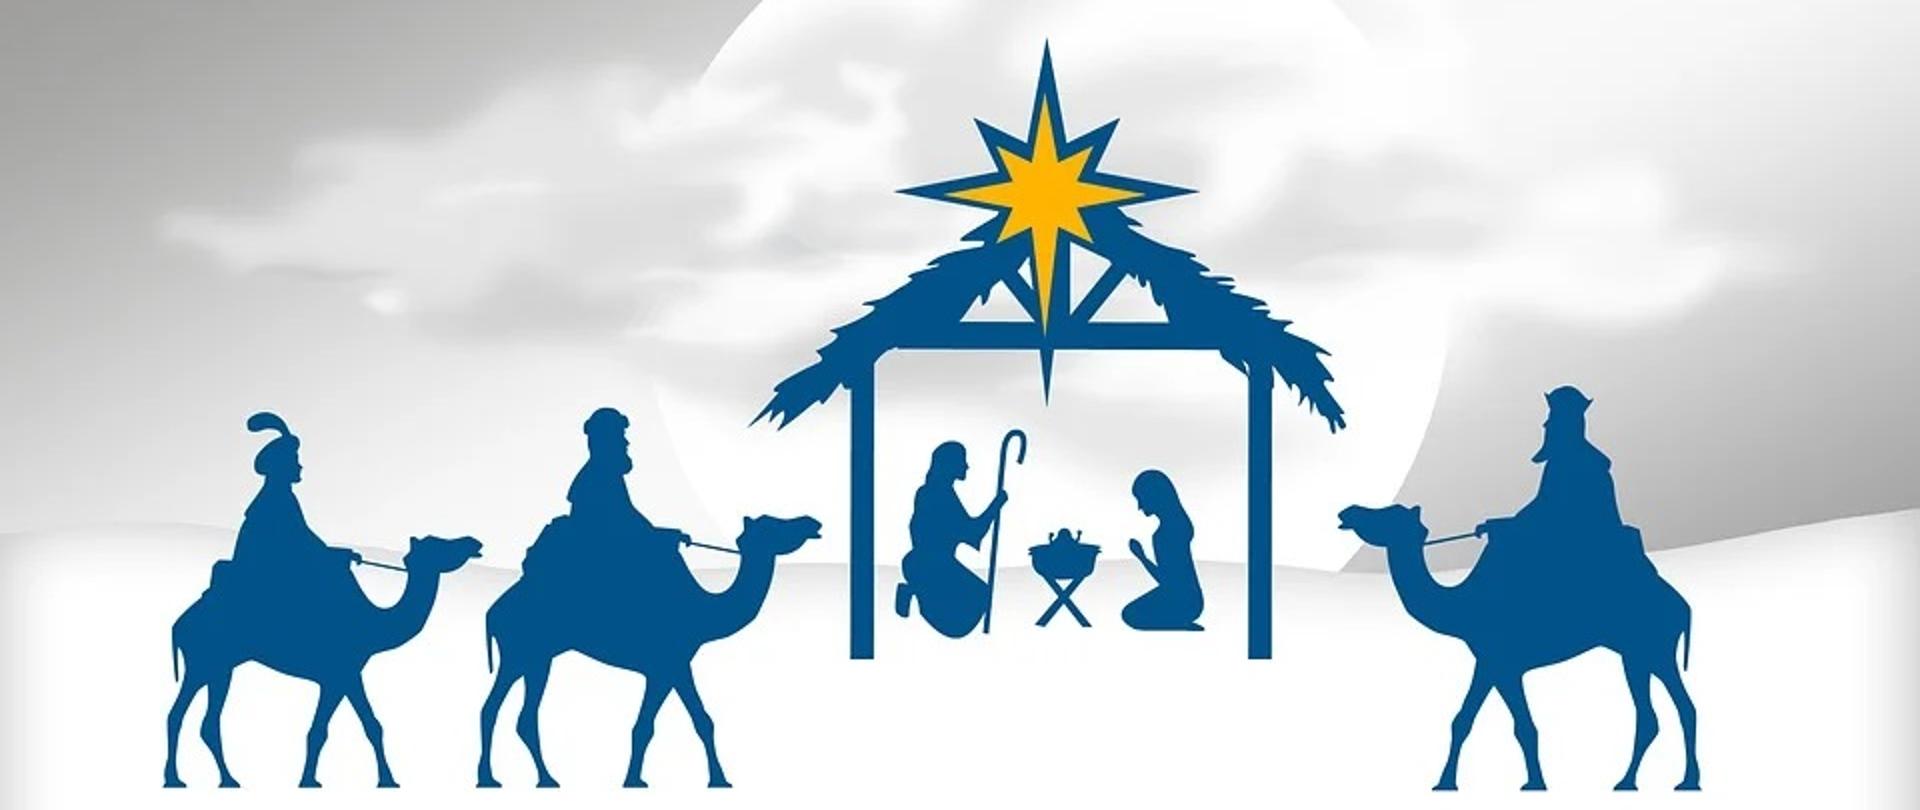 zdjęcie w barwach biało niebieskich, przedstawią szopkę bożonarodzeniową i trzech mędrców